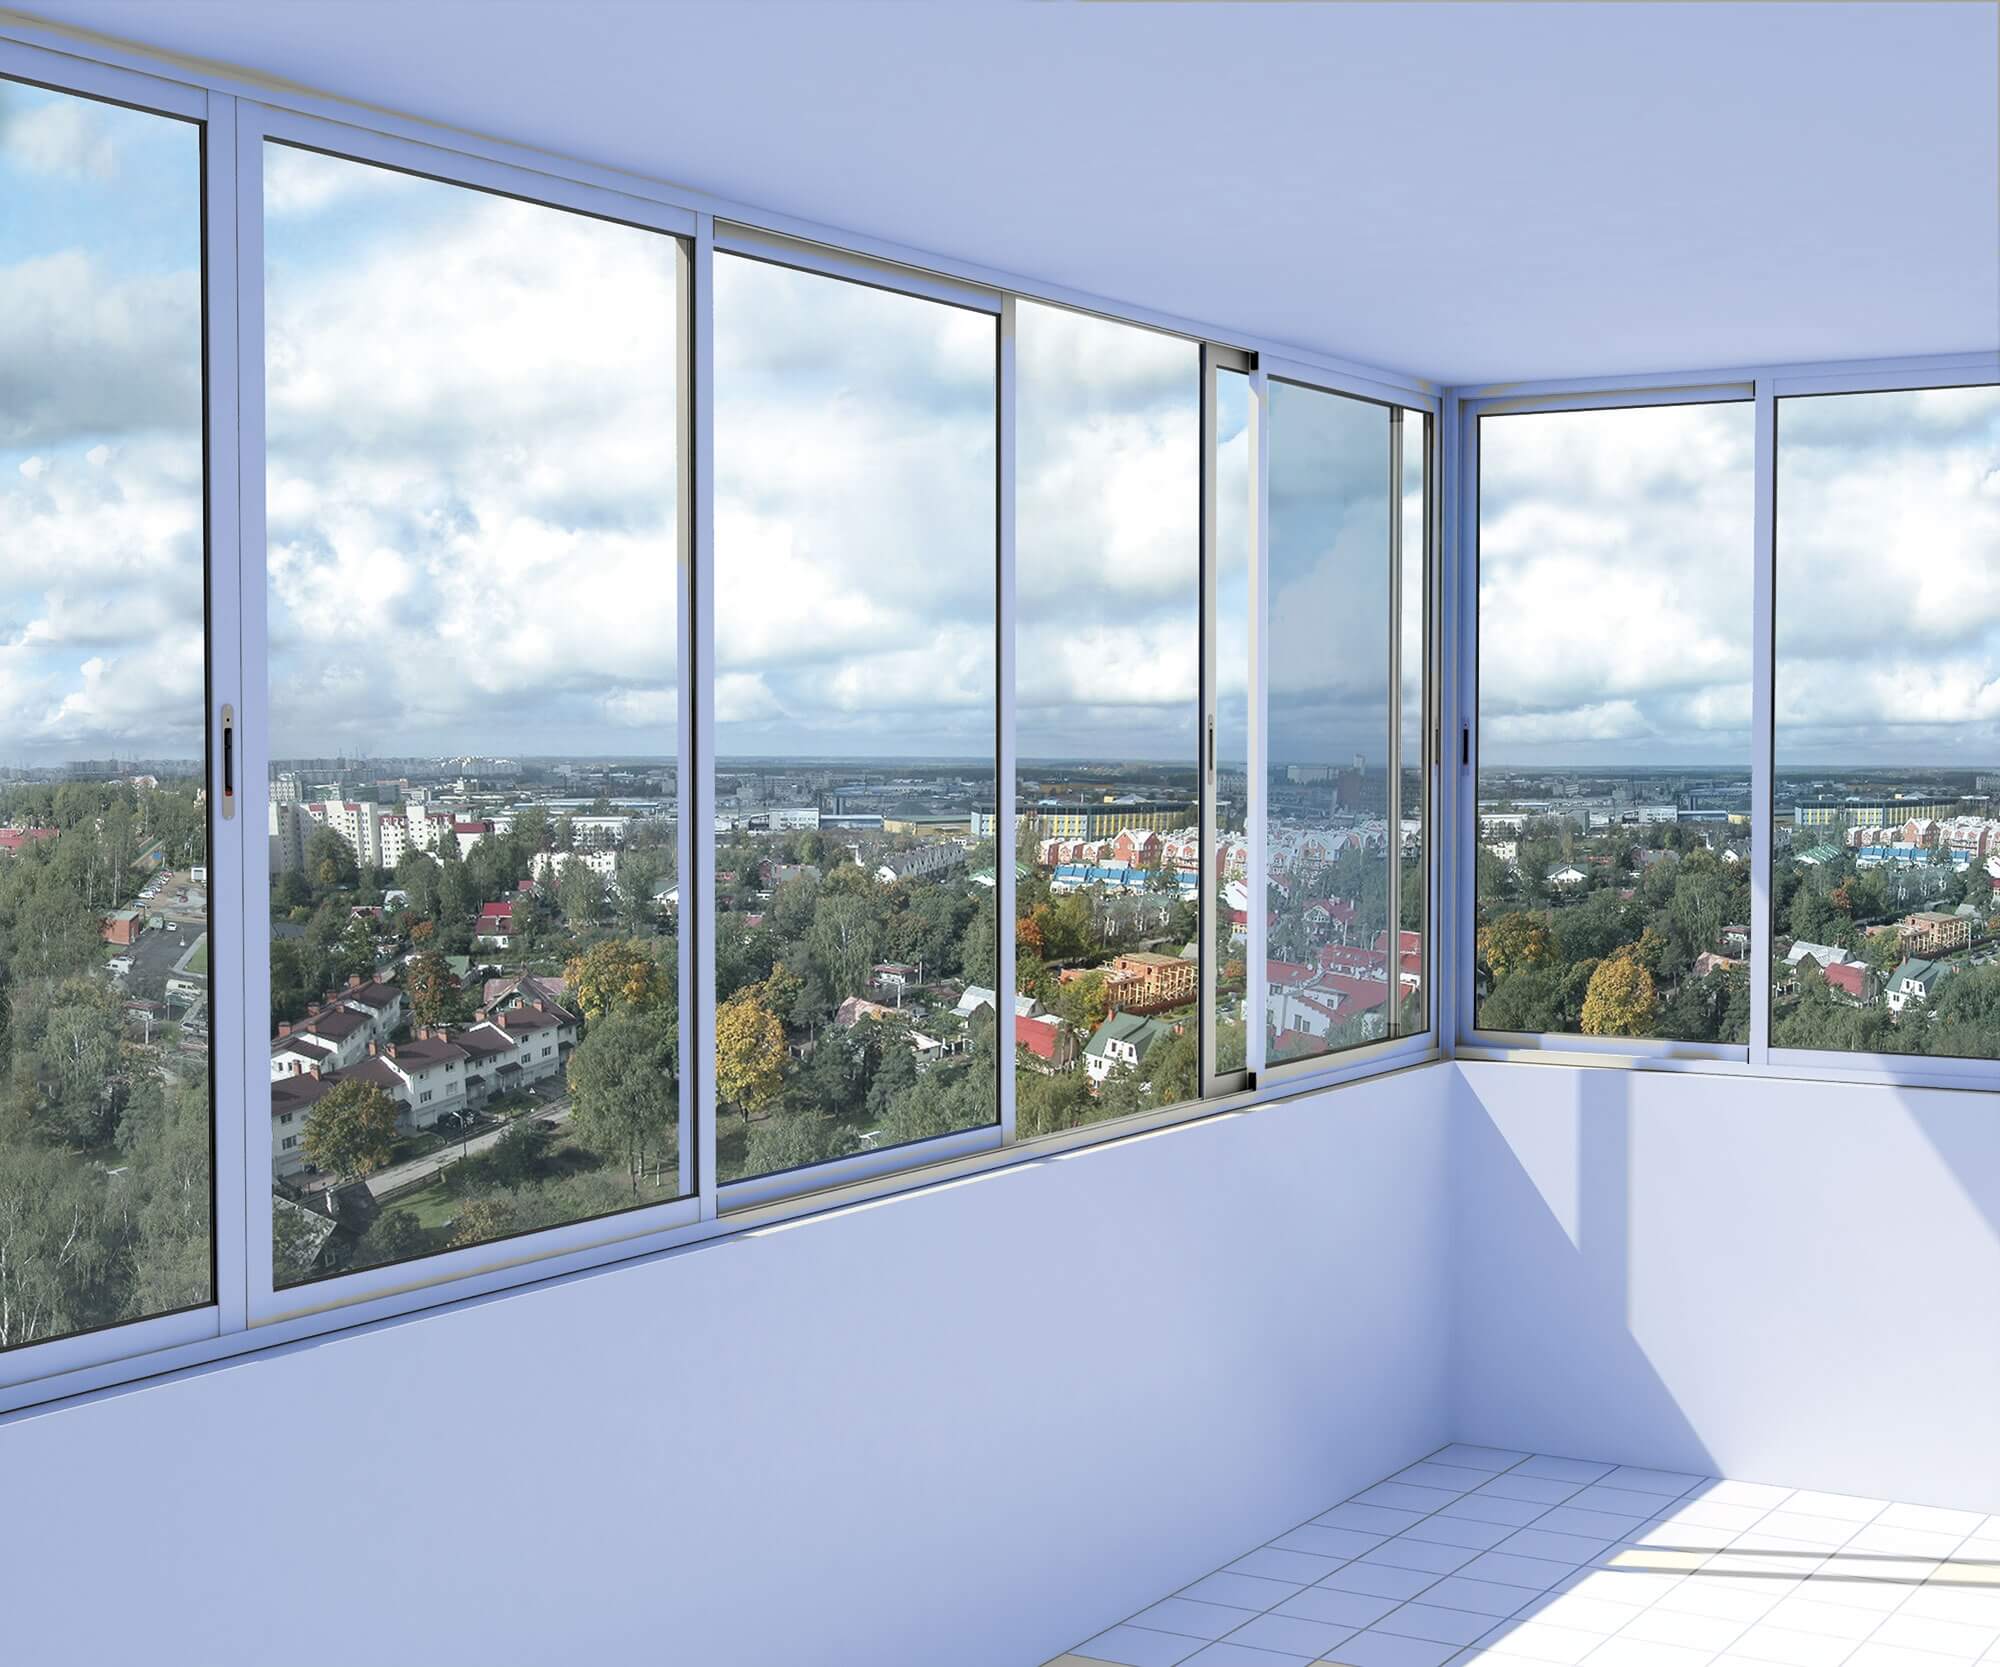 Холодное остекление балкона и лоджии: алюминиевые окна и балконные рамы